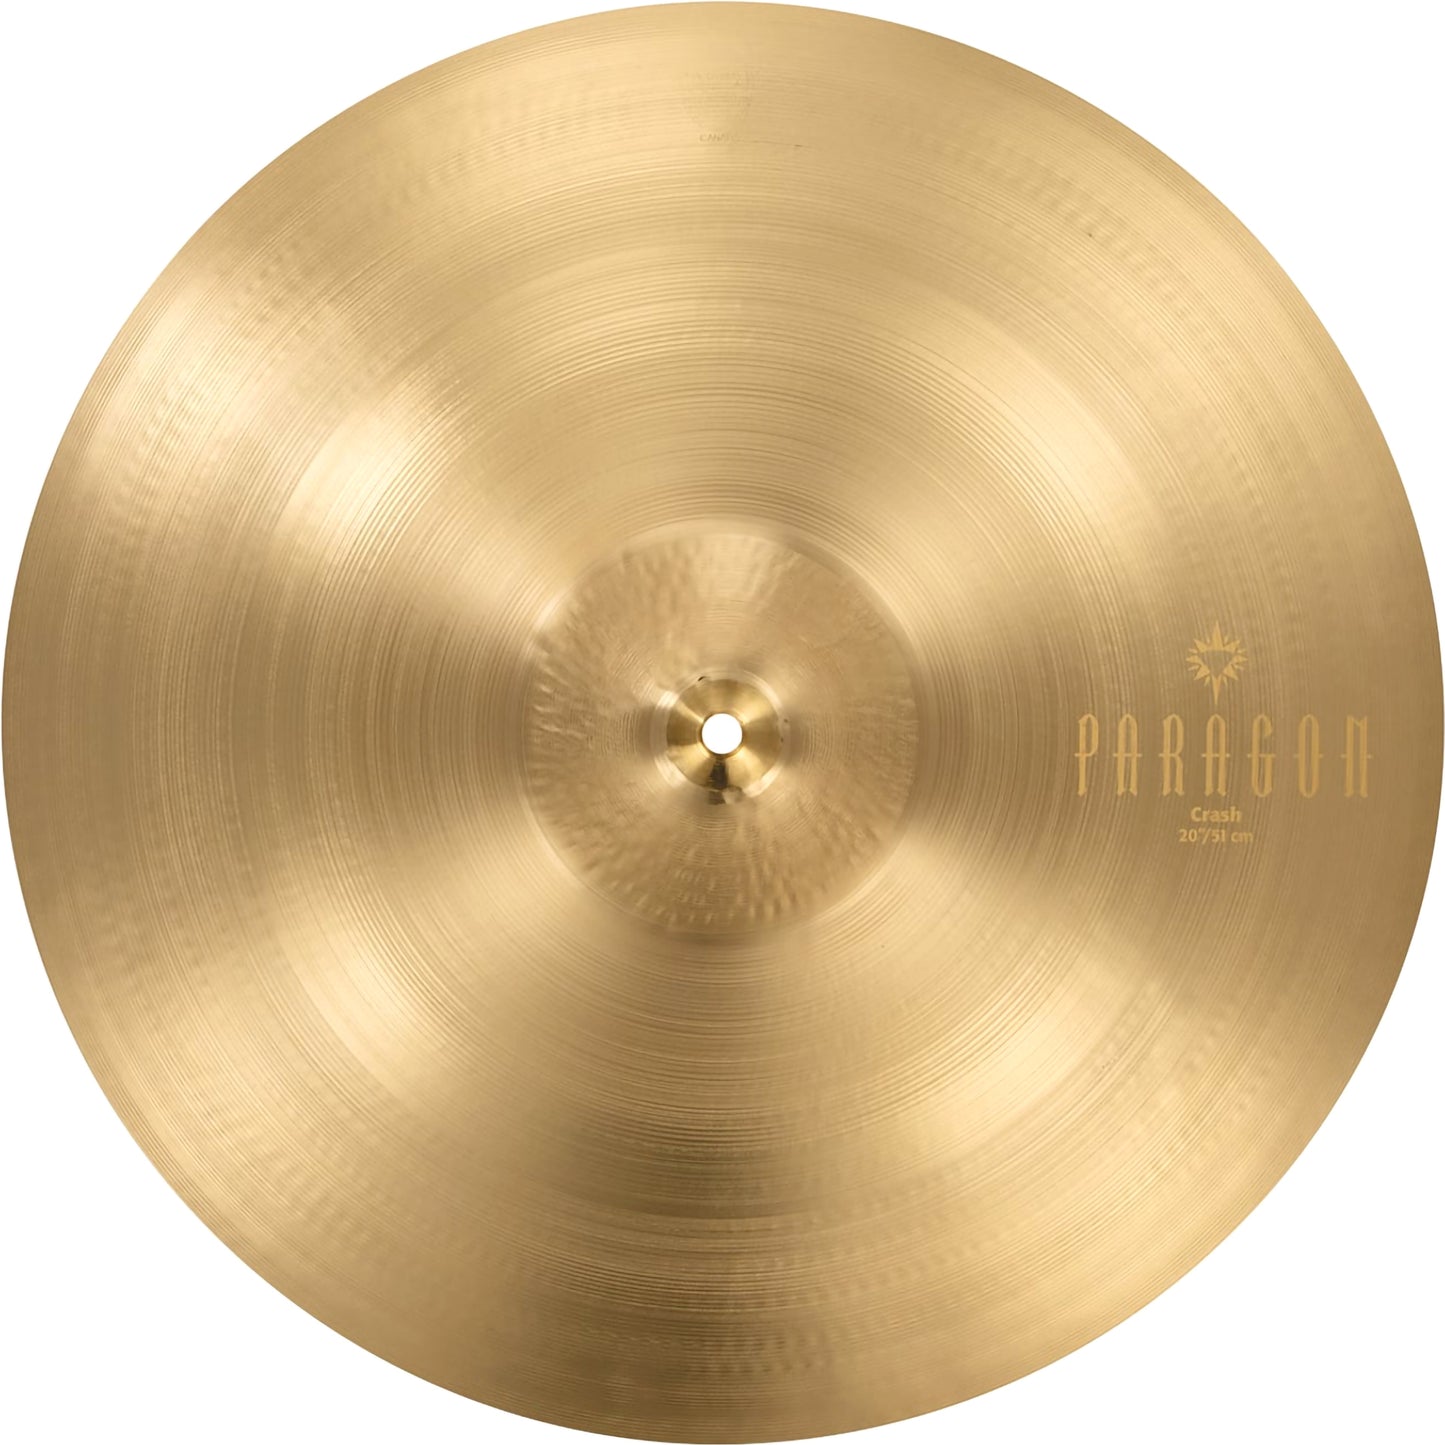 Sabian 20” Paragon Medium Crash Cymbal